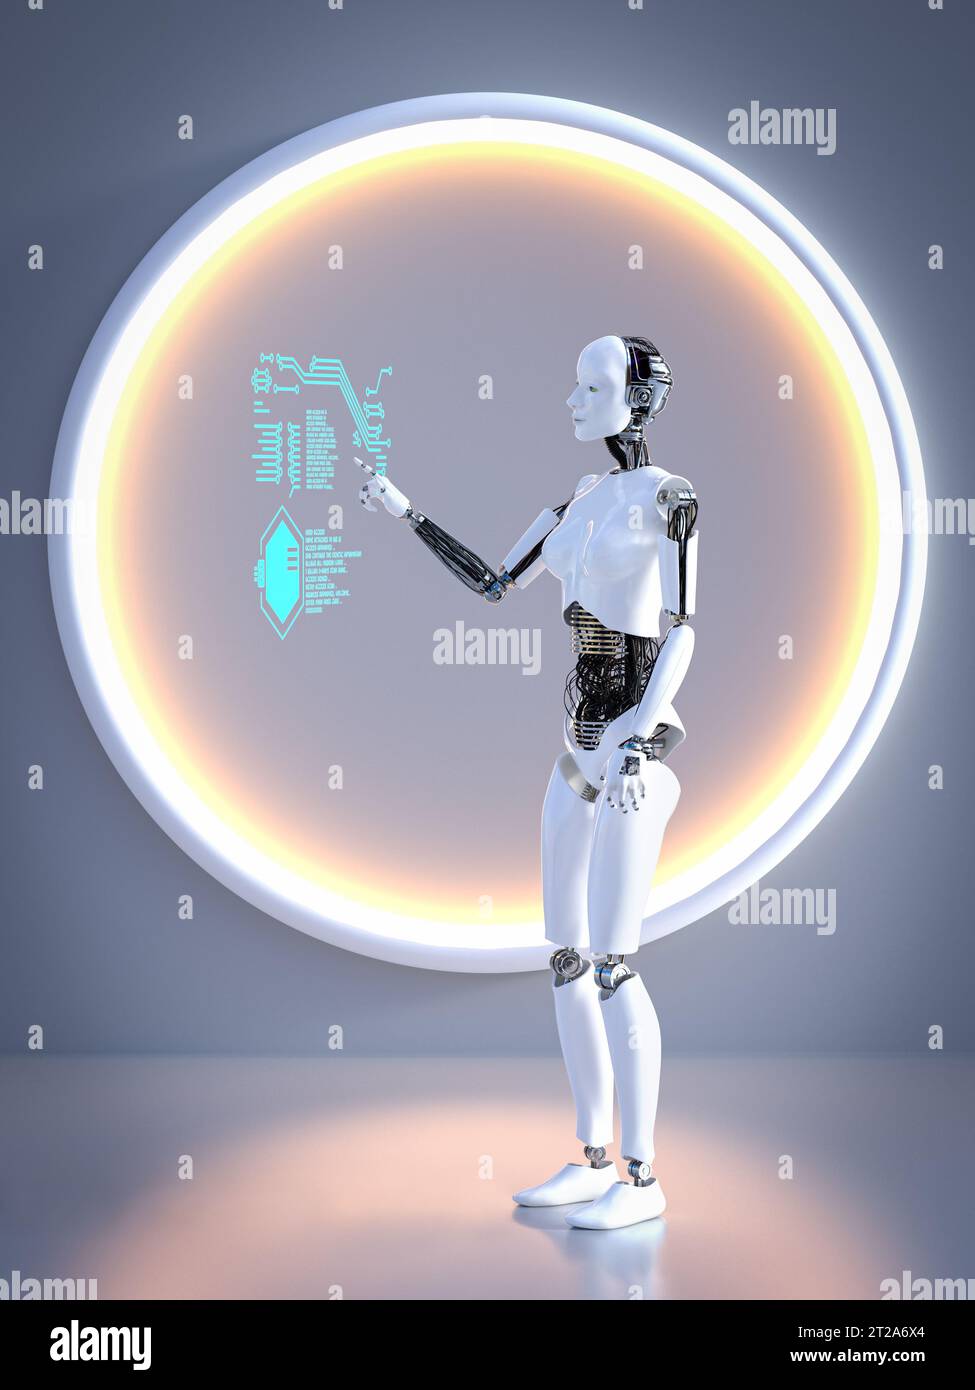 Rendu 3D d'un robot féminin travaillant sur un écran tactile numérique transparent qui flotte dans l'air. Concept futuriste. Banque D'Images